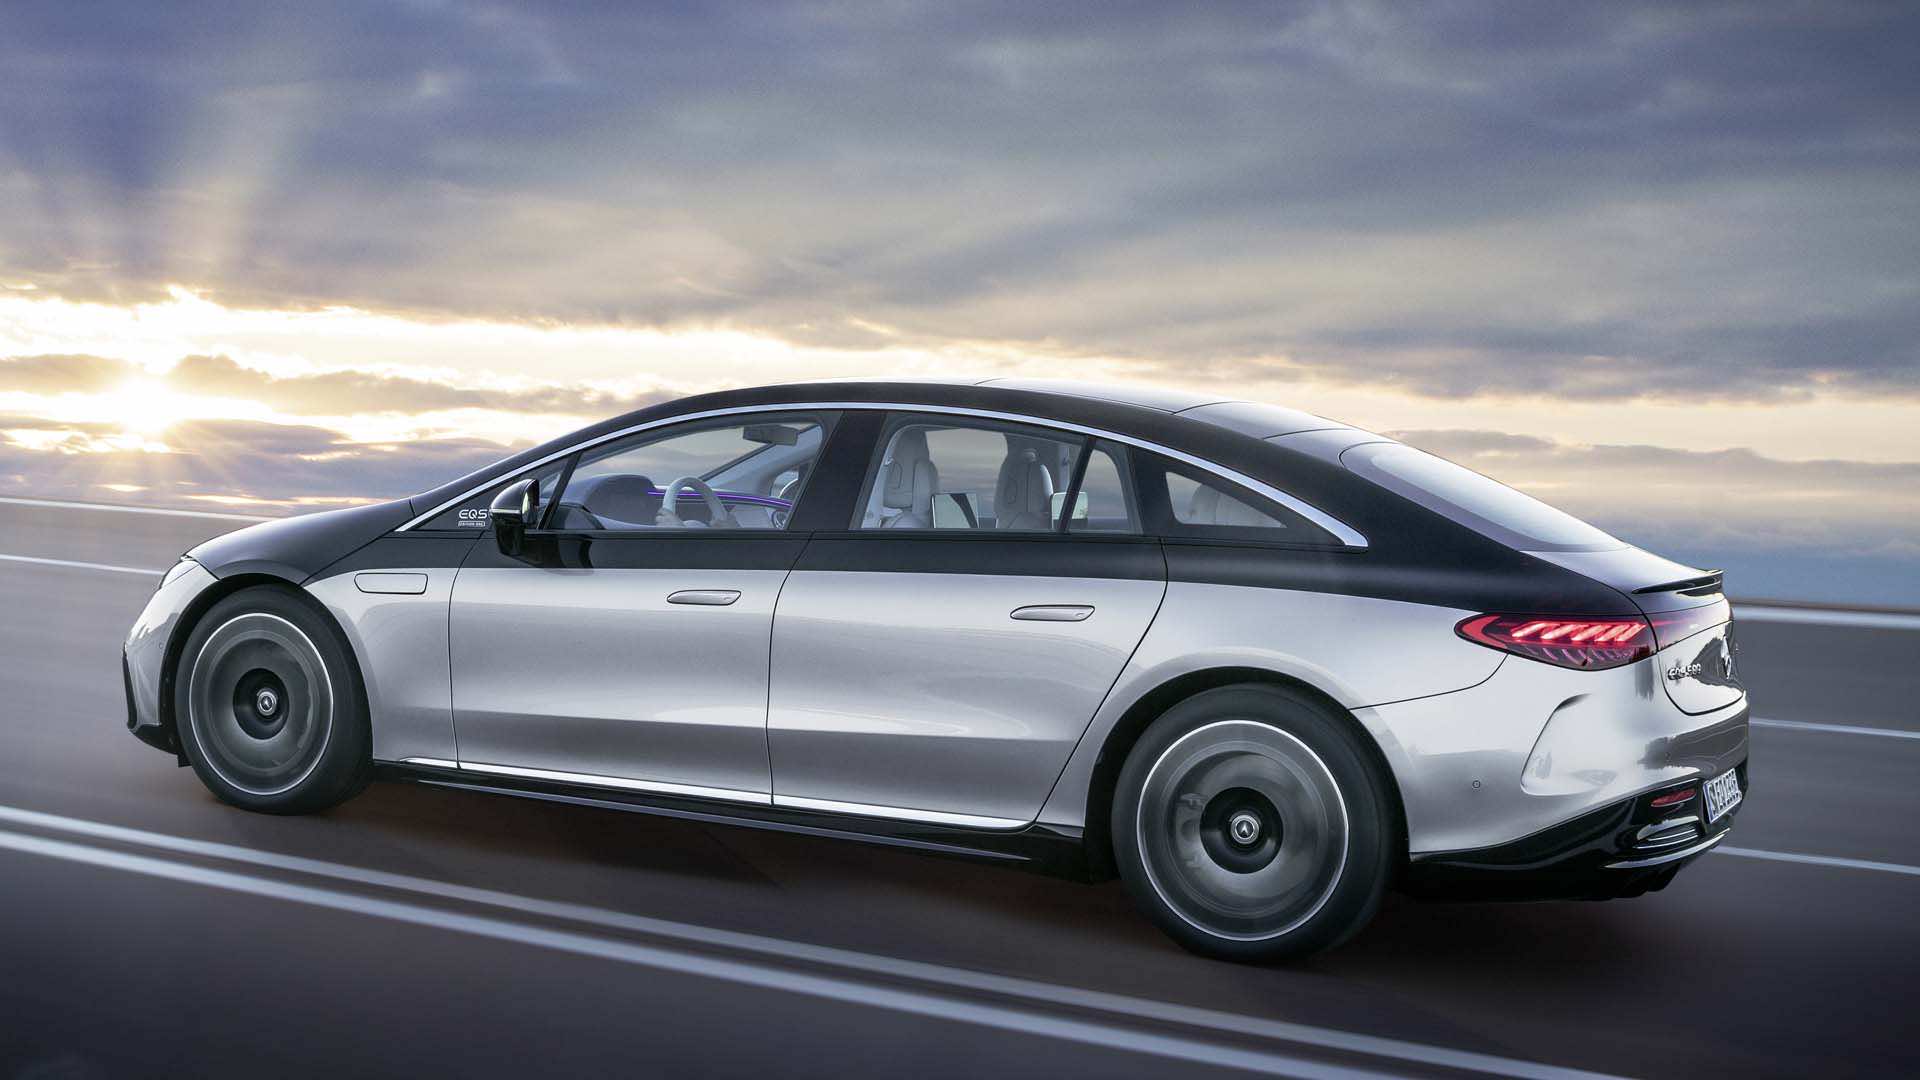 Mercedes EQS 2022